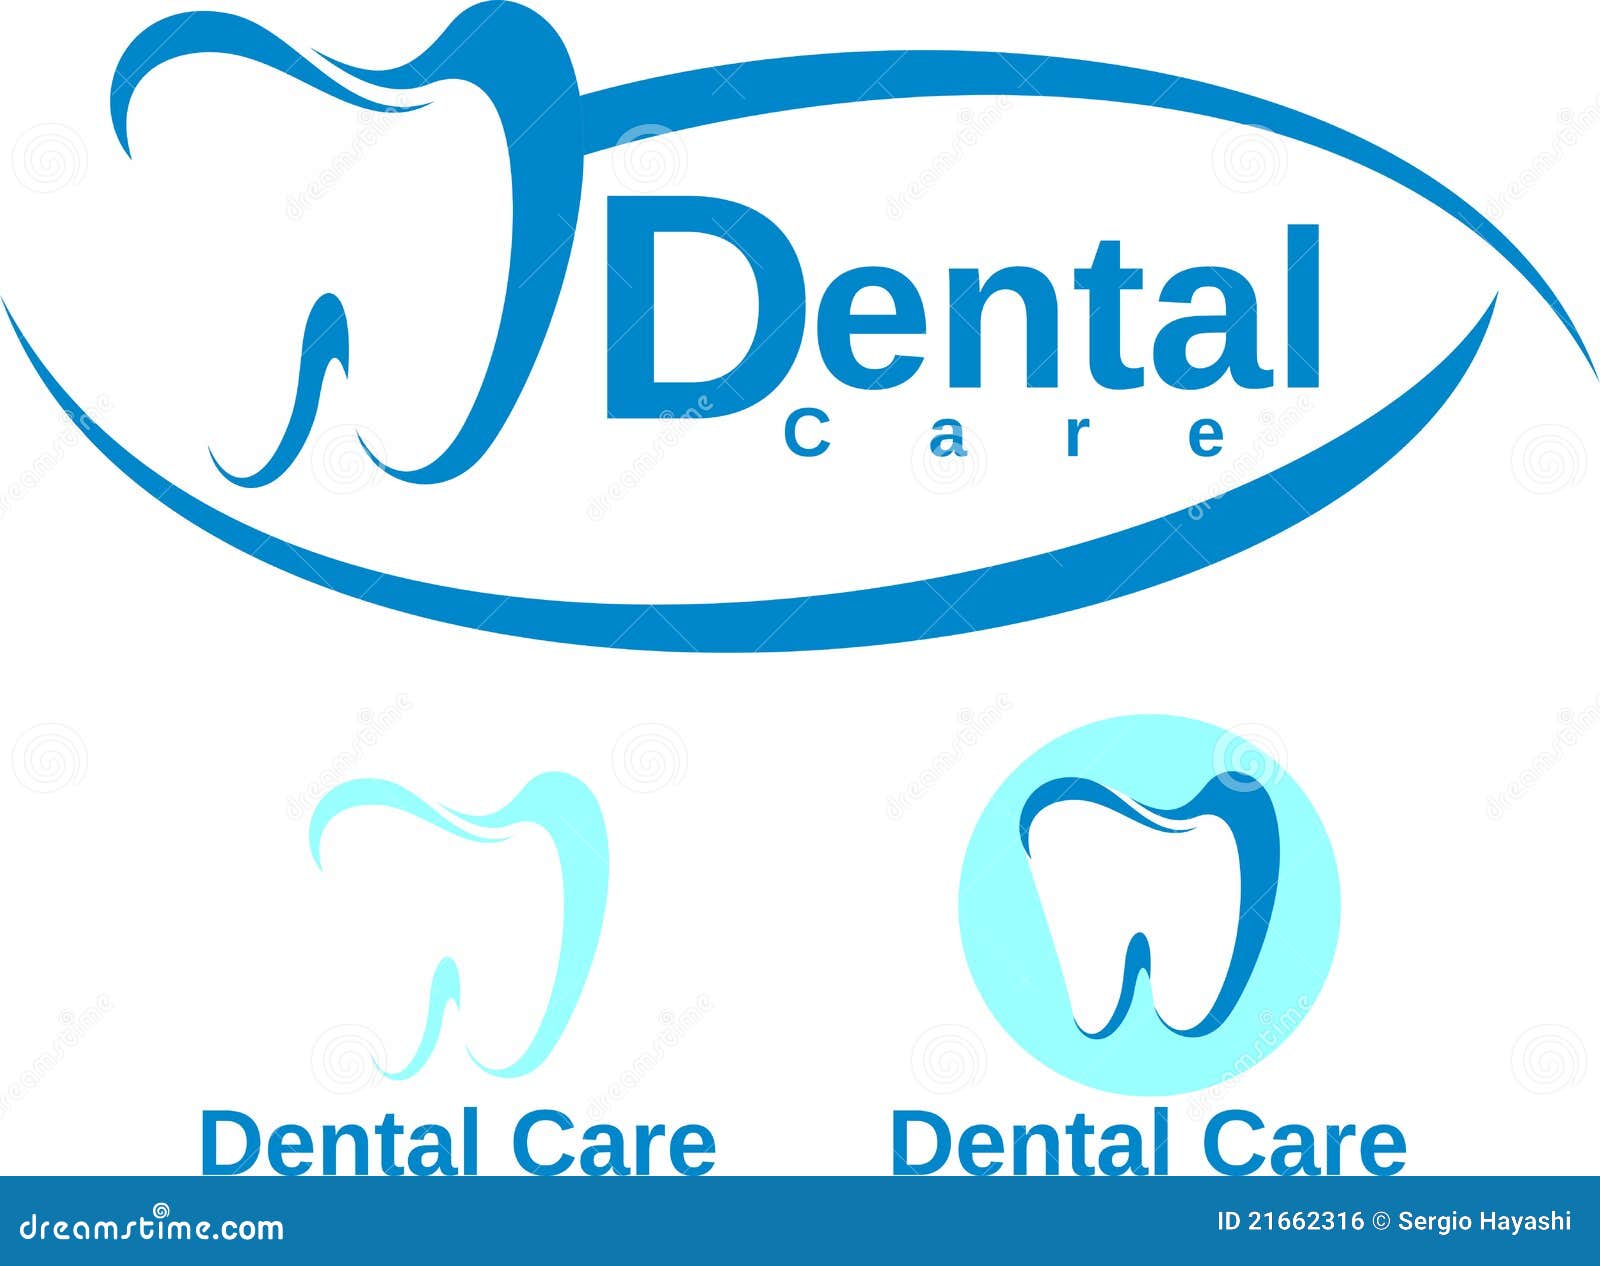 dental-care-design-21662316.jpg